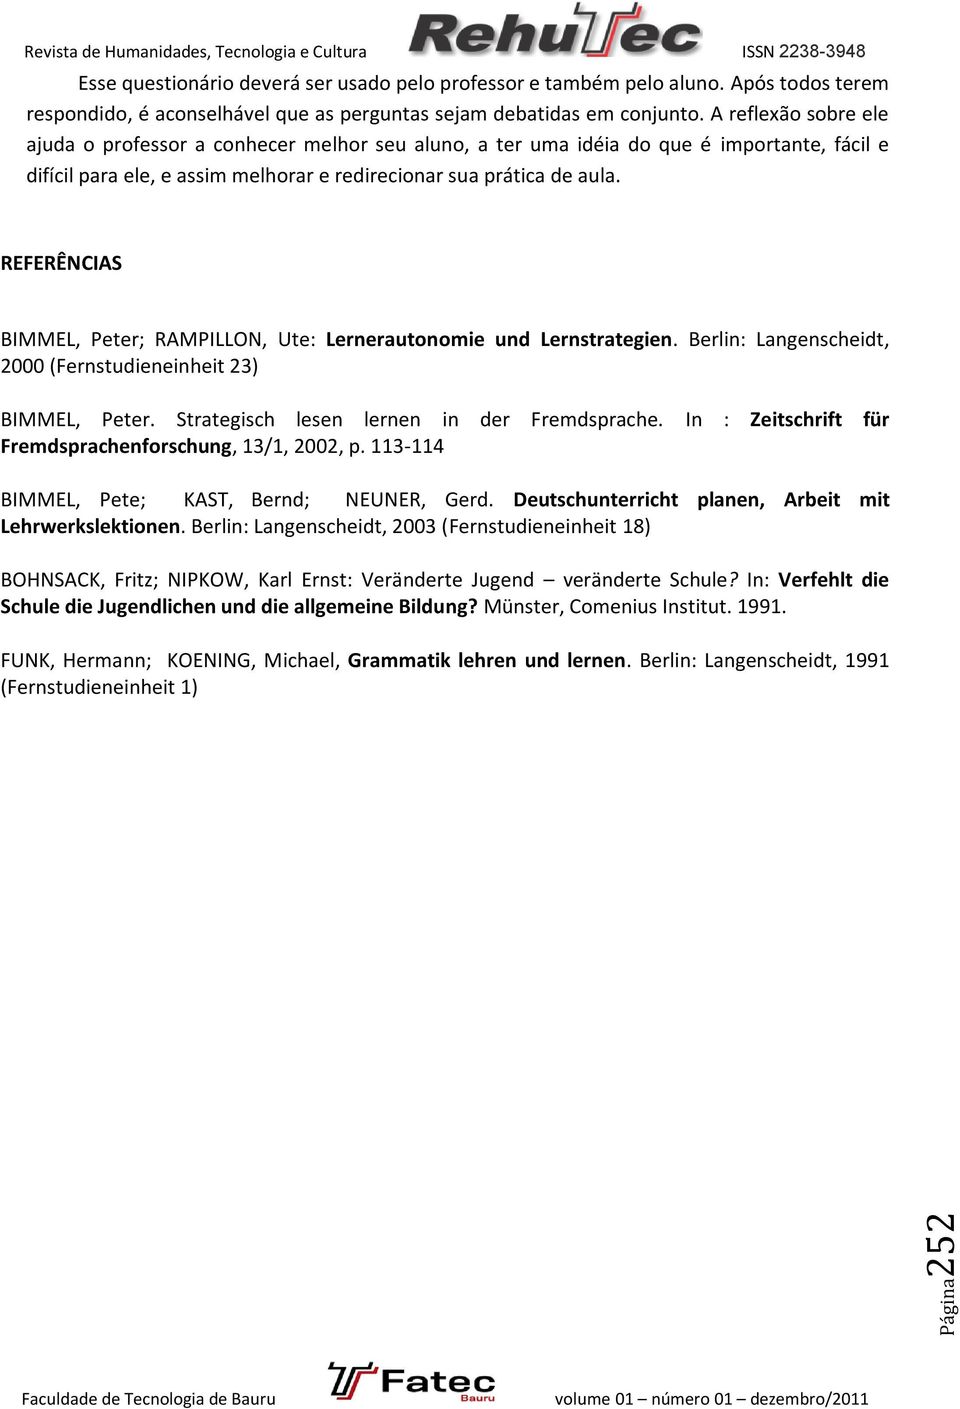 REFERÊNCIAS BIMMEL, Peter; RAMPILLON, Ute: Lernerautonomie und Lernstrategien. Berlin: Langenscheidt, 2000 (Fernstudieneinheit 23) BIMMEL, Peter. Strategisch lesen lernen in der Fremdsprache.